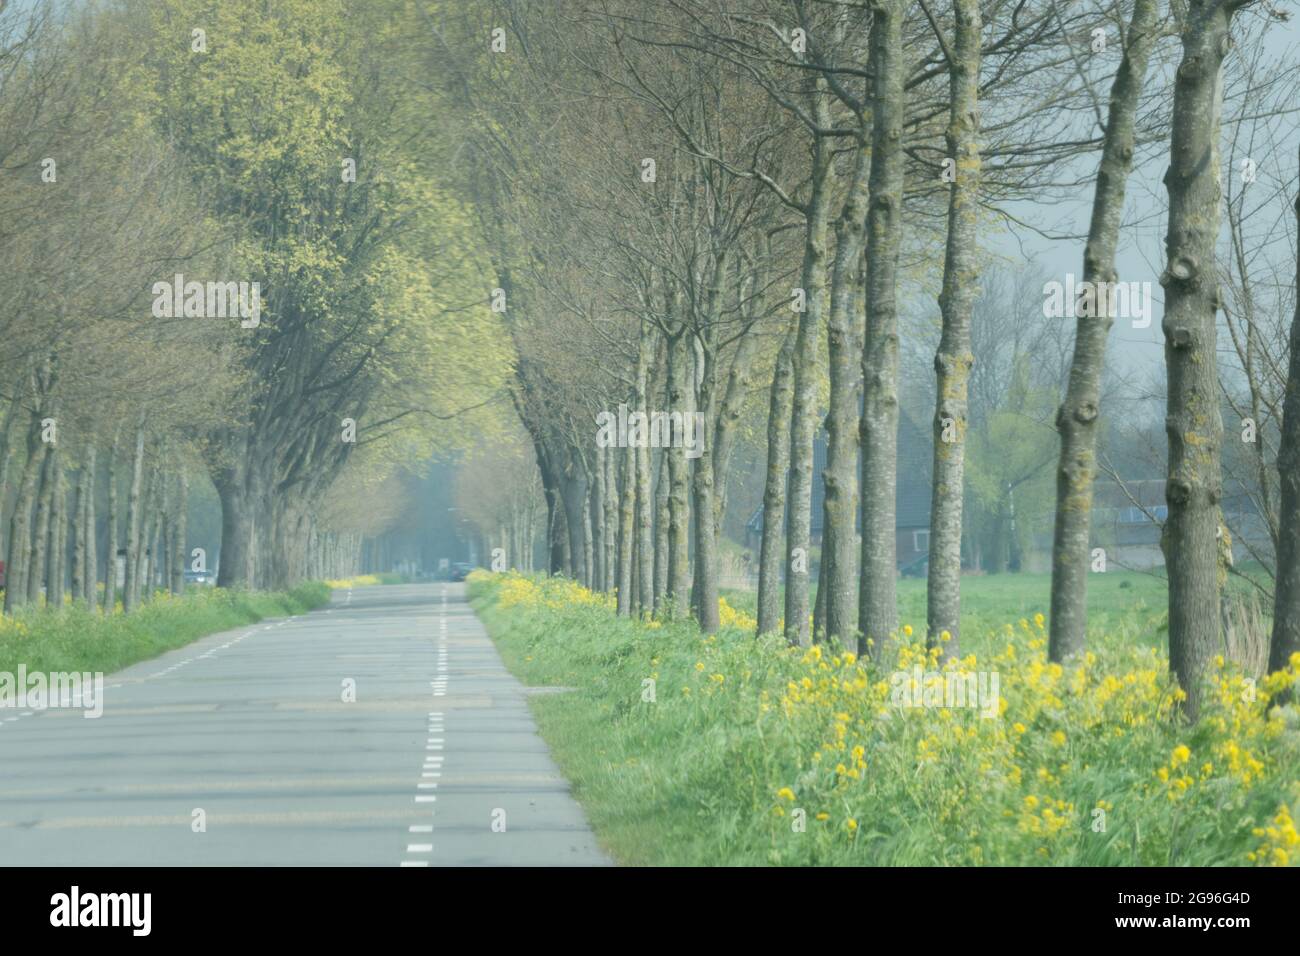 Corsia primaverile con piste ciclabili nella zona rurale del Nord-Olanda, con giovani querce e semi di mostarda gialli fioriti. Zestedenweg, Scharwoude, West-Friesland, NE Foto Stock